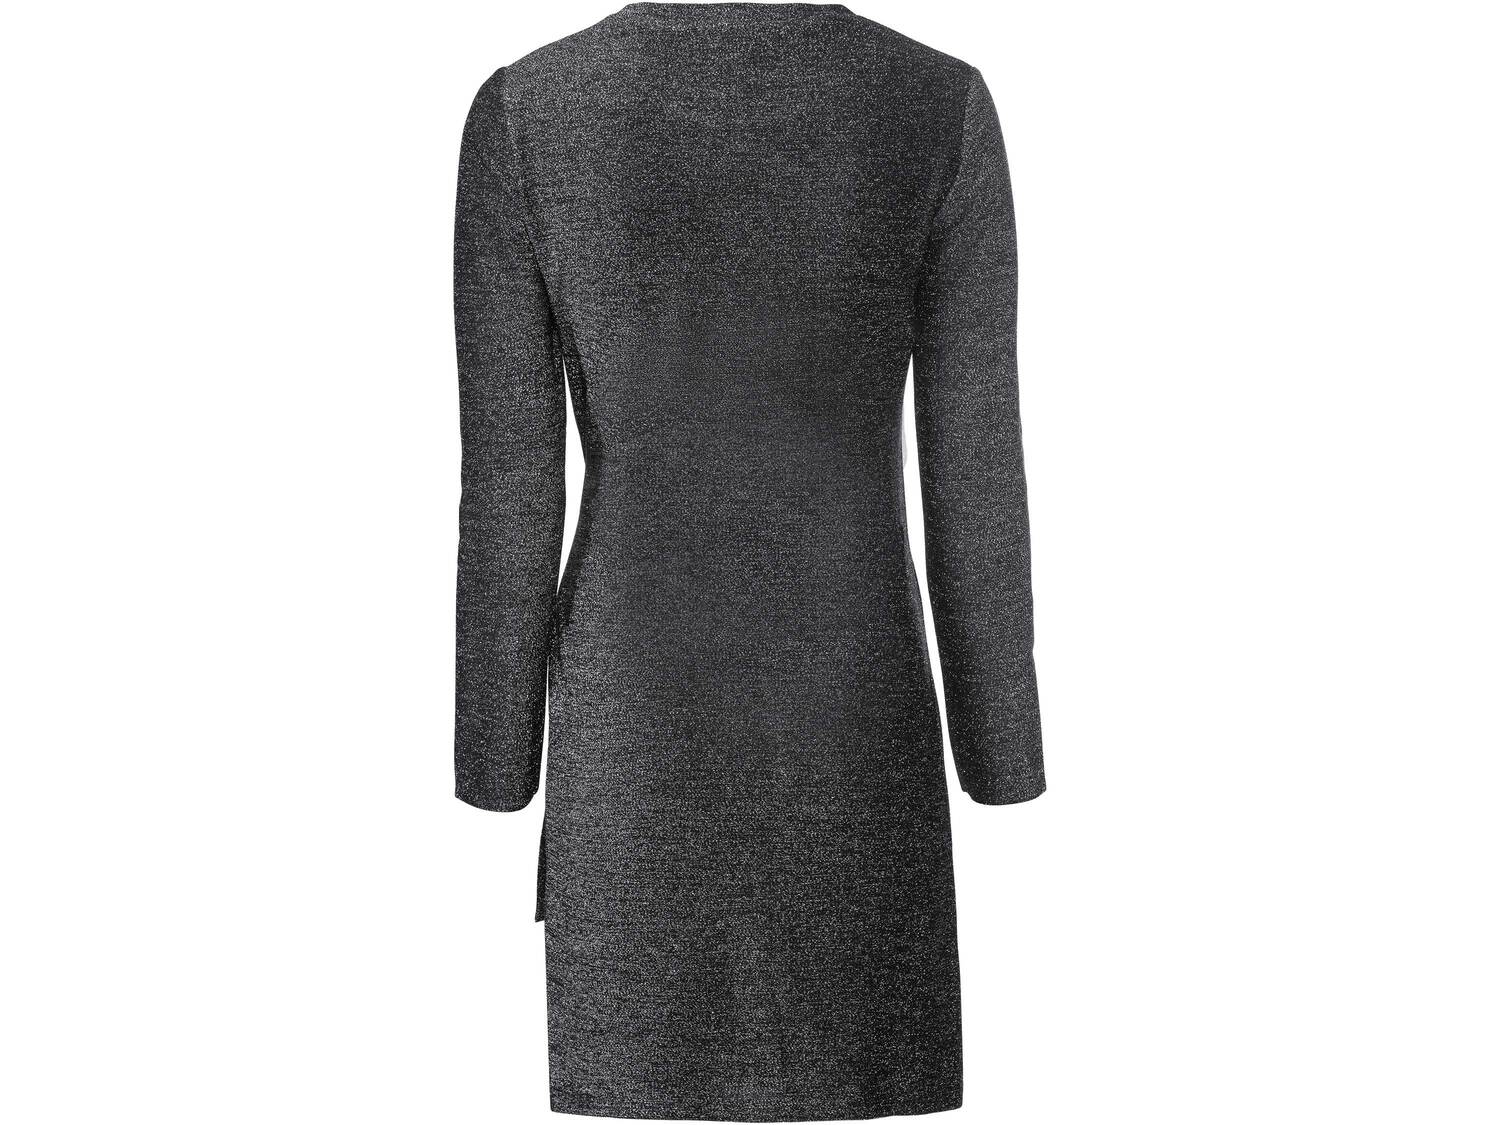 Sukienka z błyszczącej tkaniny Esmara, cena 49,99 PLN 
- rozmiary: XS-L
Dostępne ...